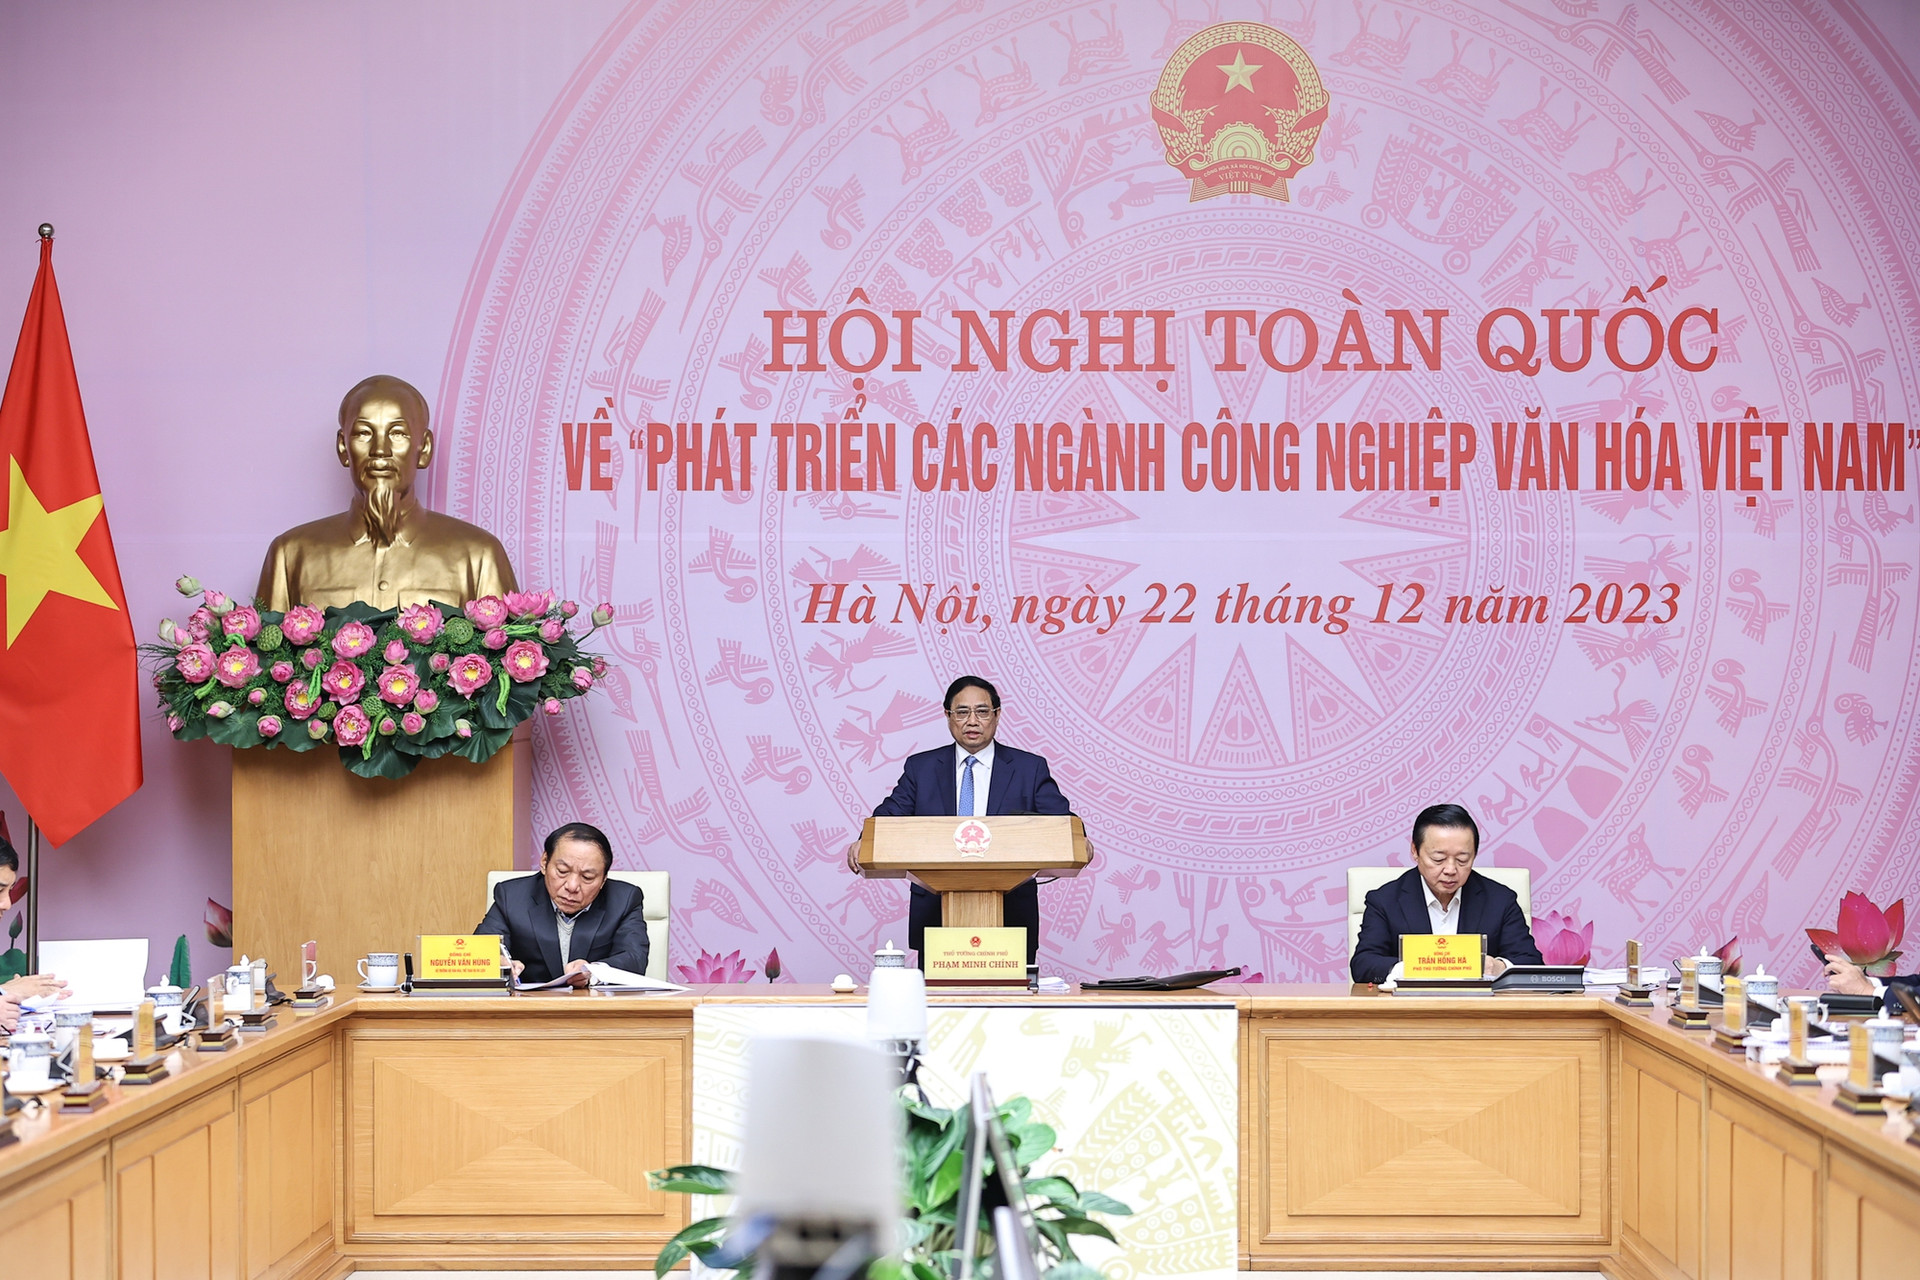 Hội nghị đầu tiên, có ý nghĩa đặc biệt quan trọng về phát triển các ngành công nghiệp văn hóa Việt Nam- Ảnh 2.